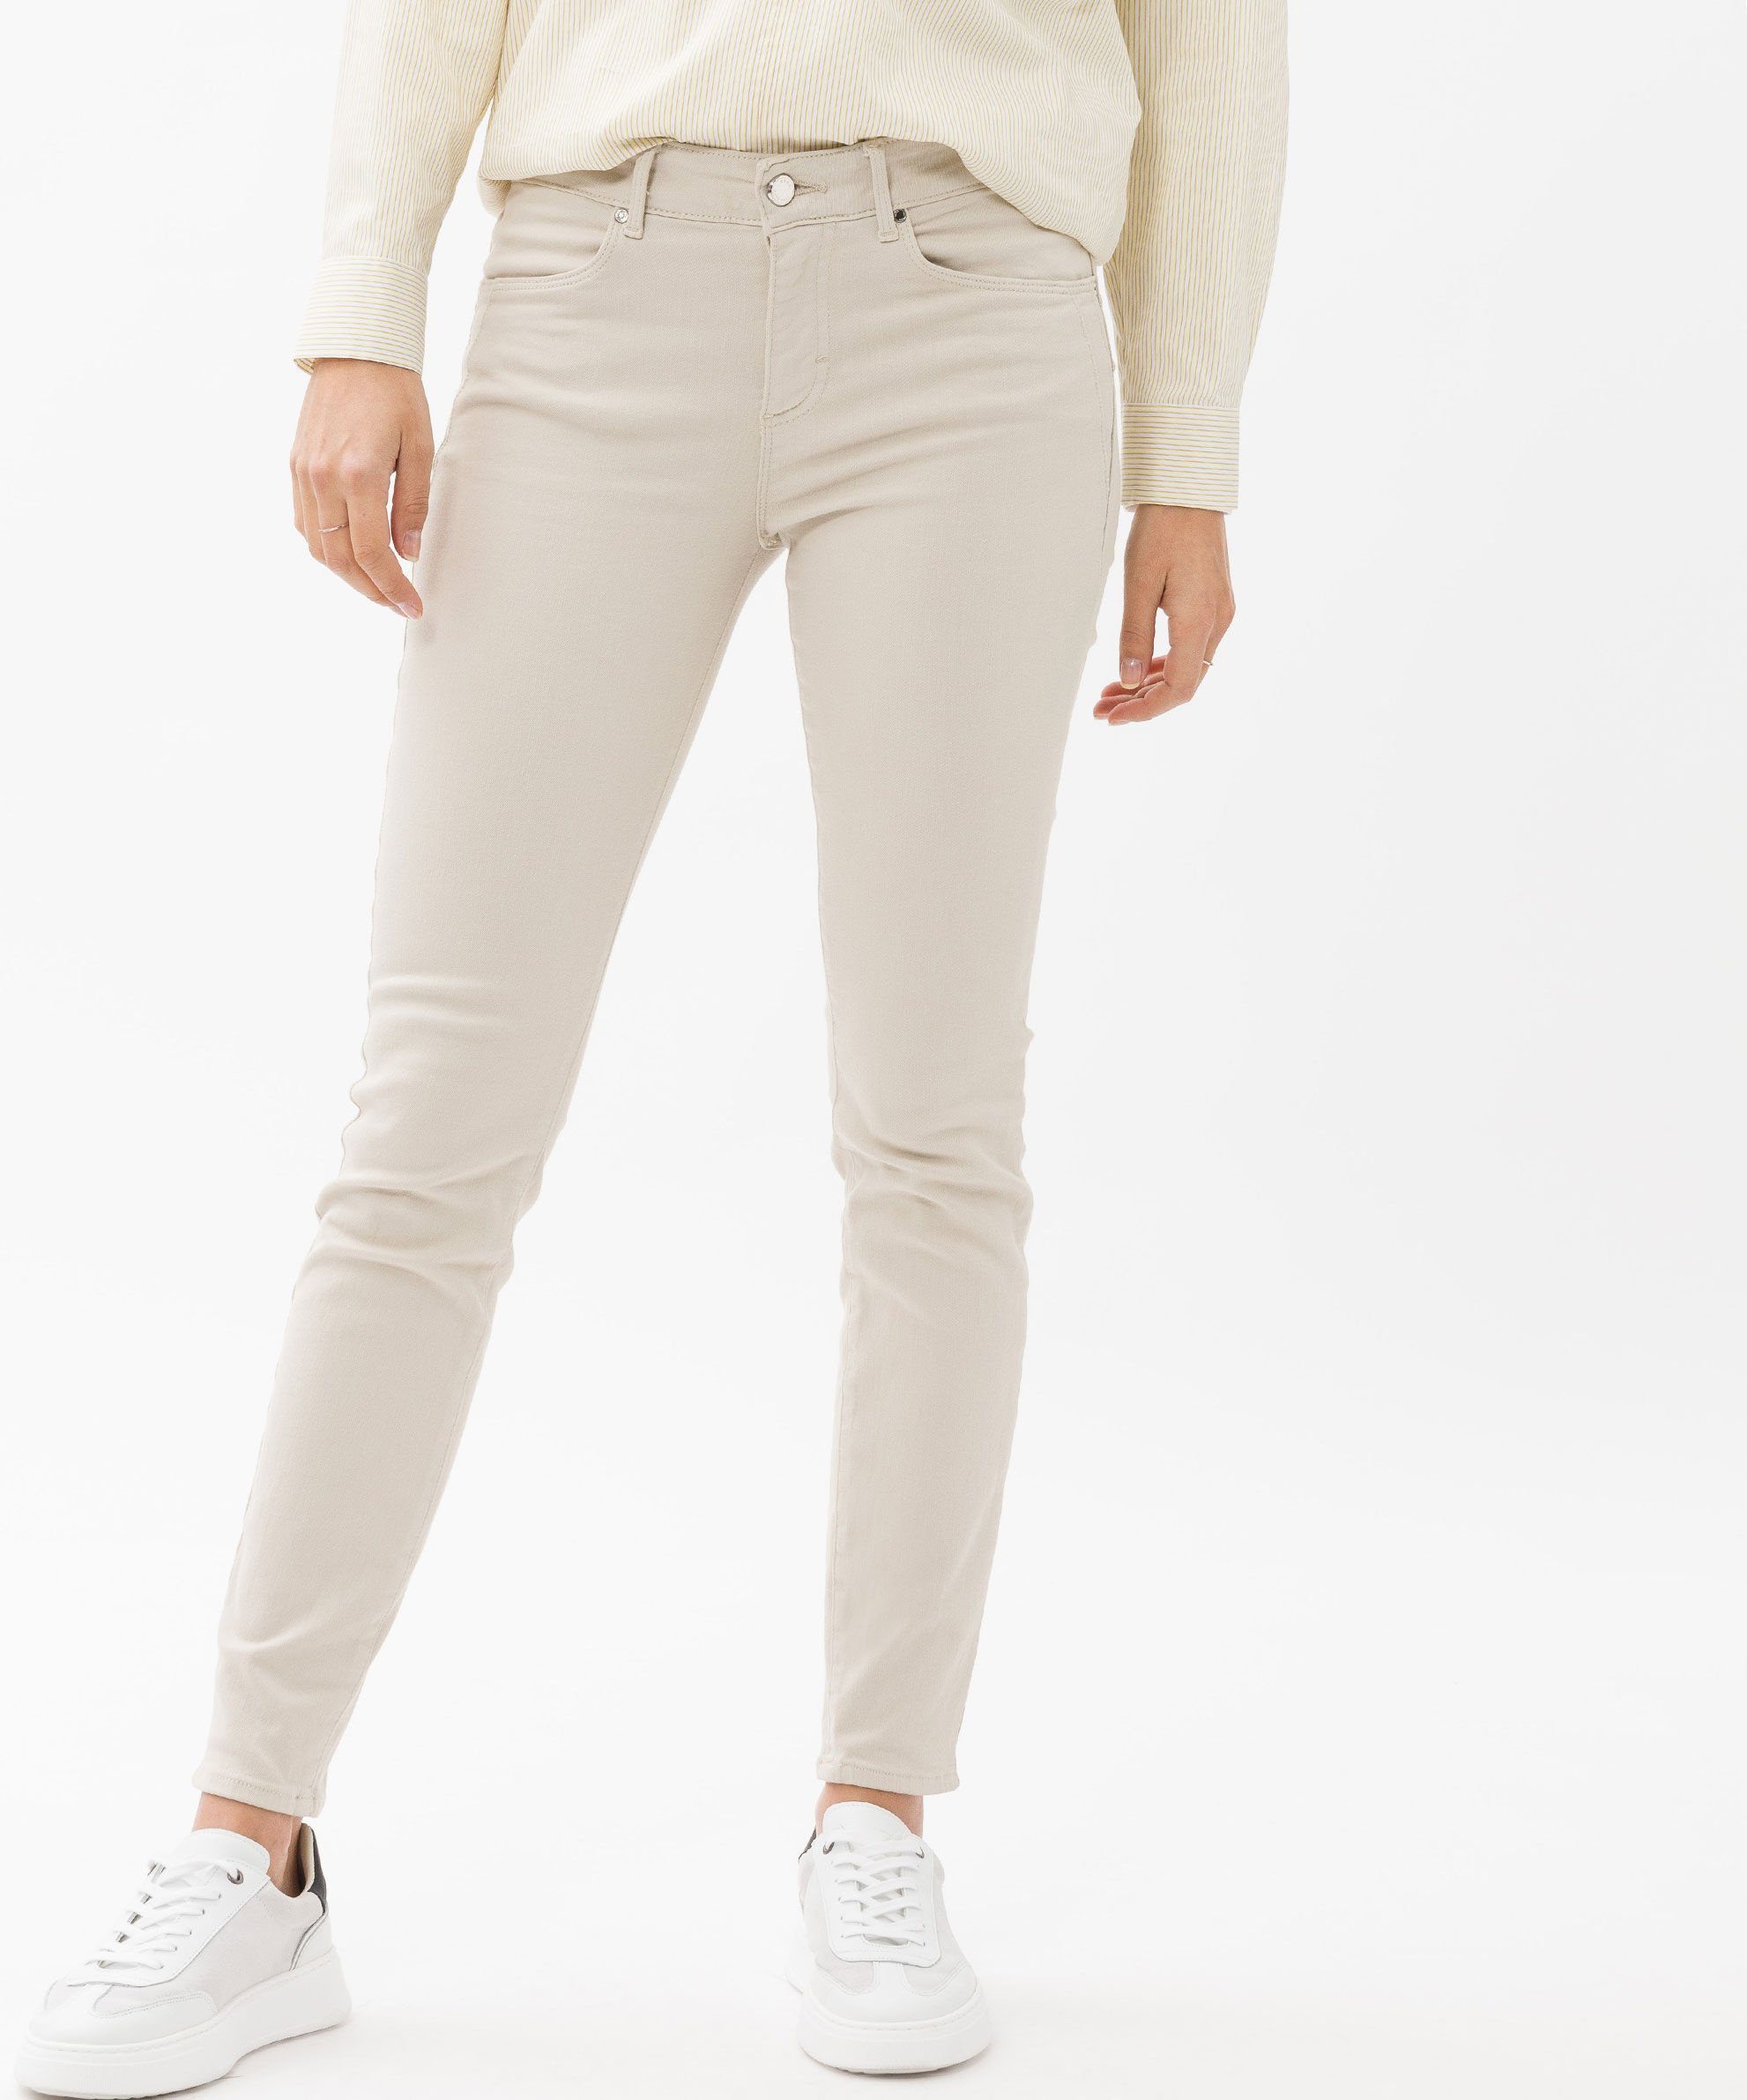 Brax Skinny-fit-Jeans Röhrenjeans mit rope Stylingdetails trendigen